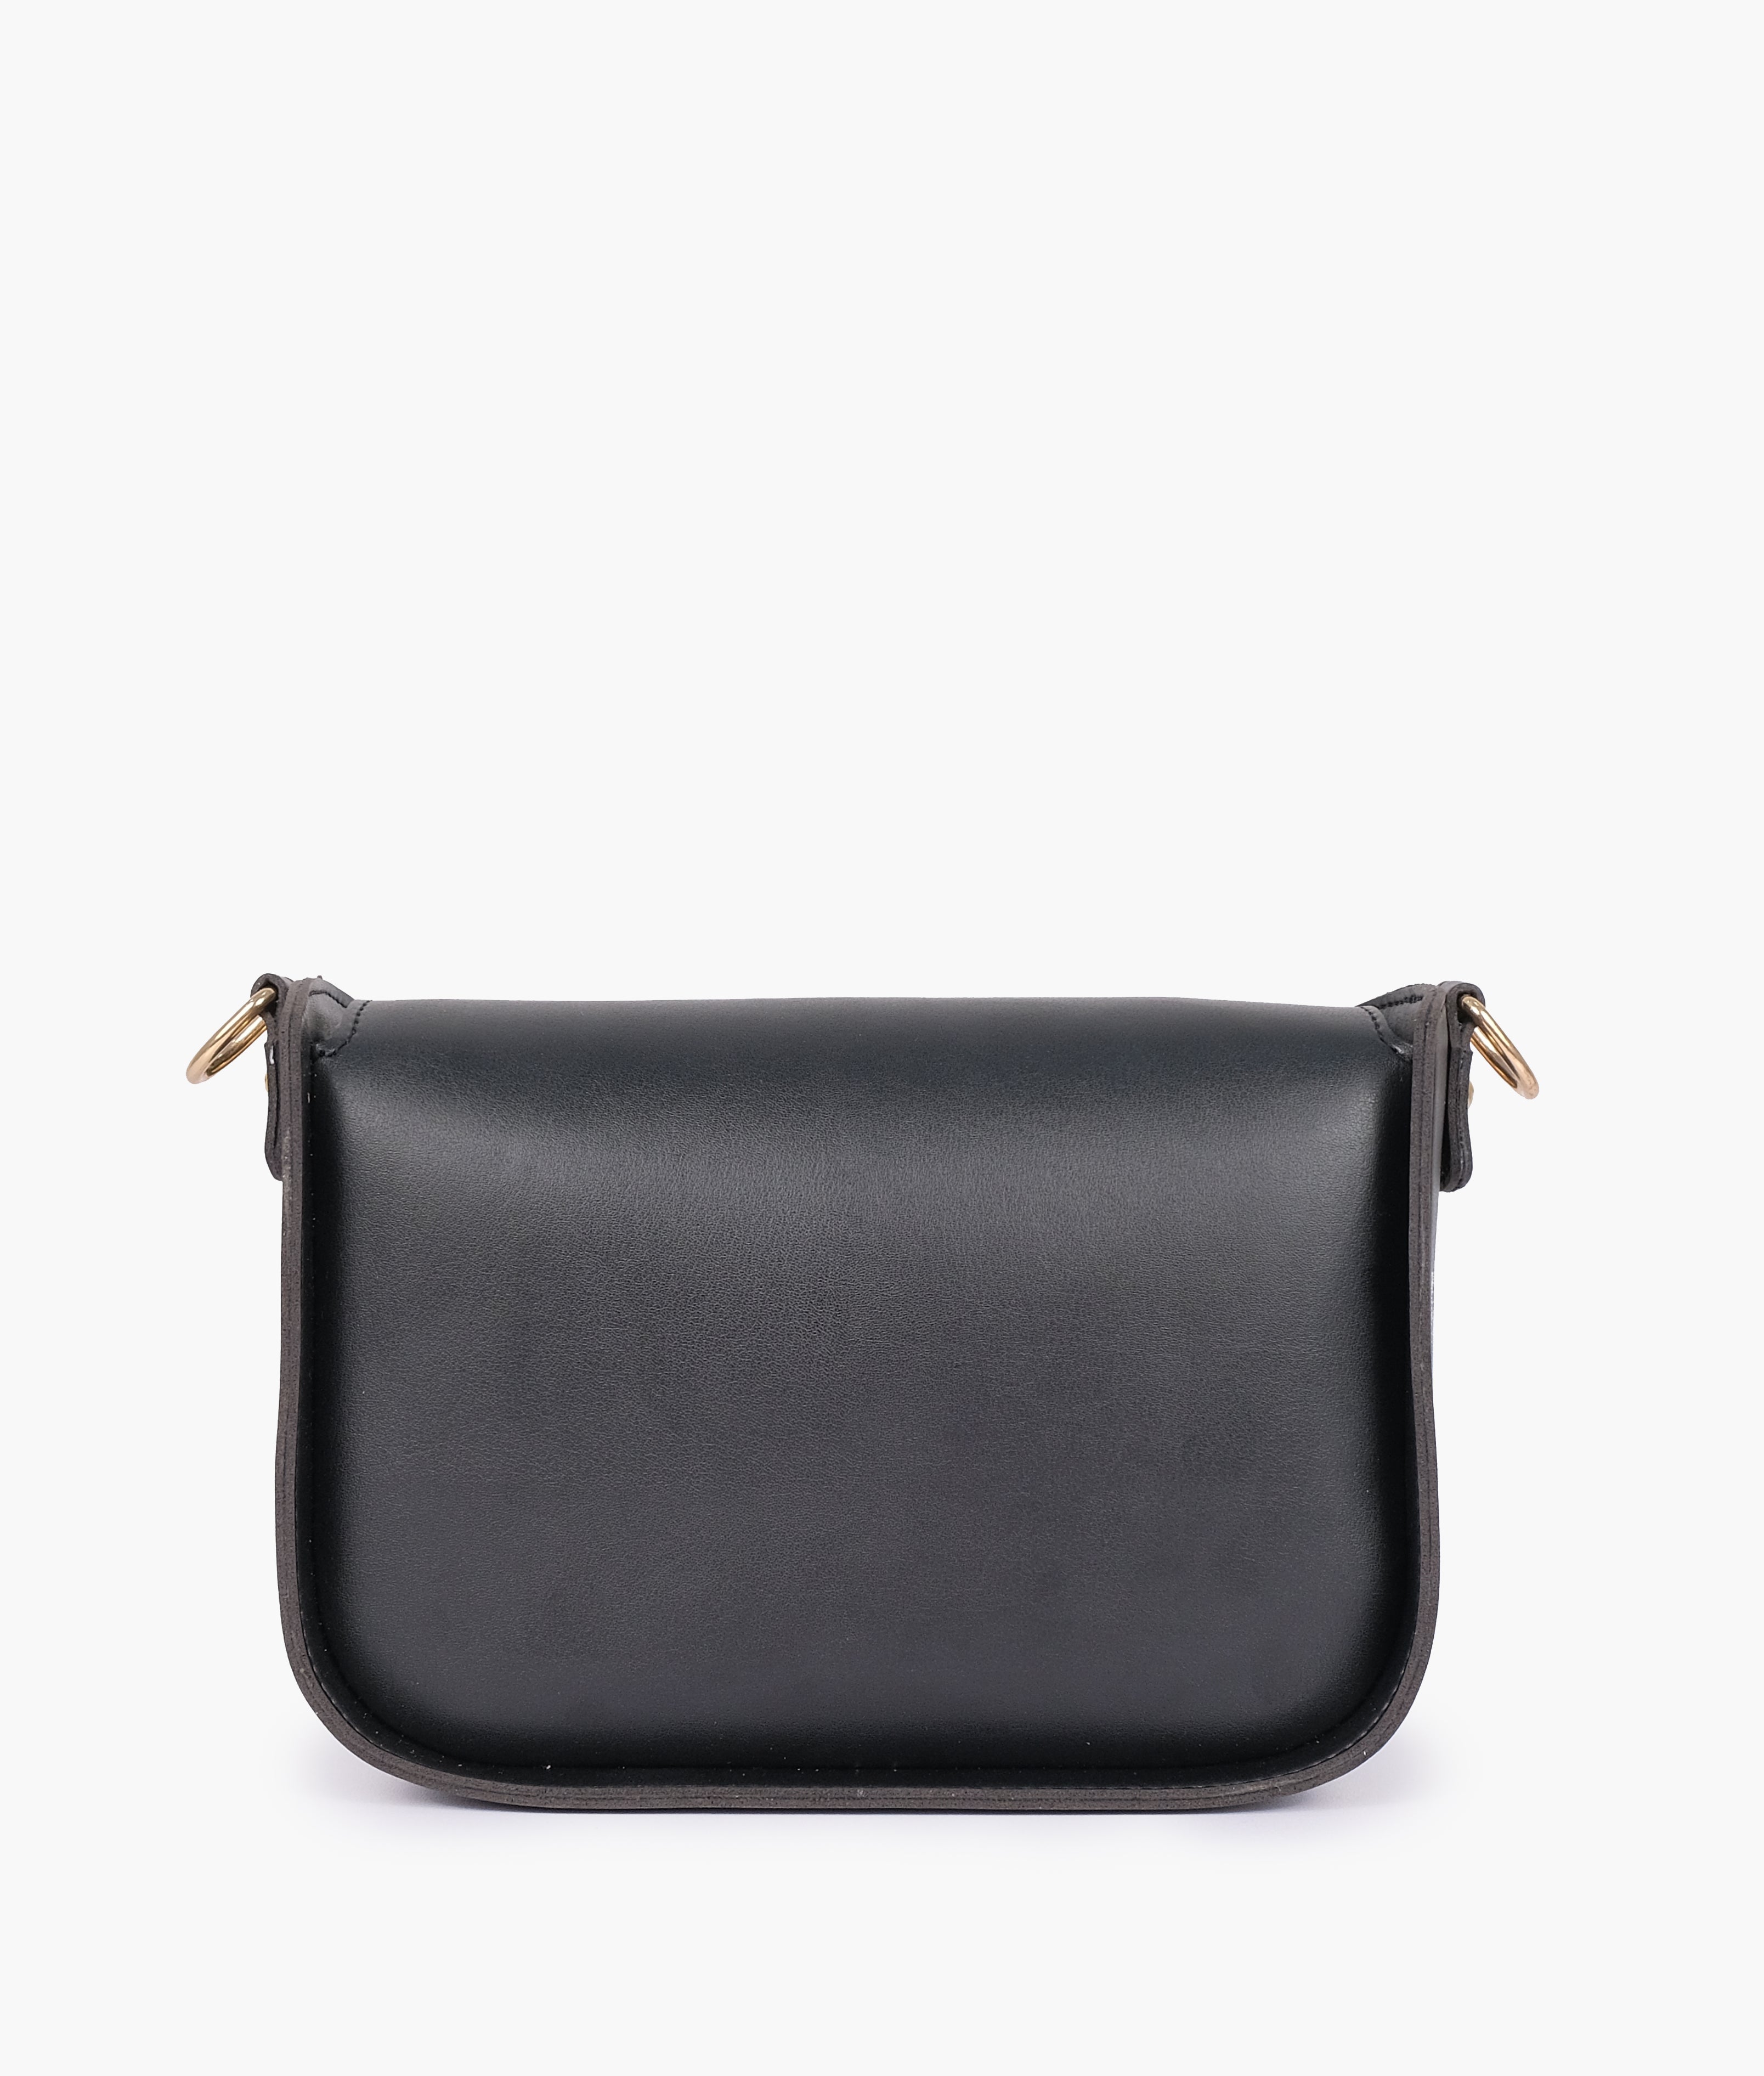 Black Handbag For Women 606